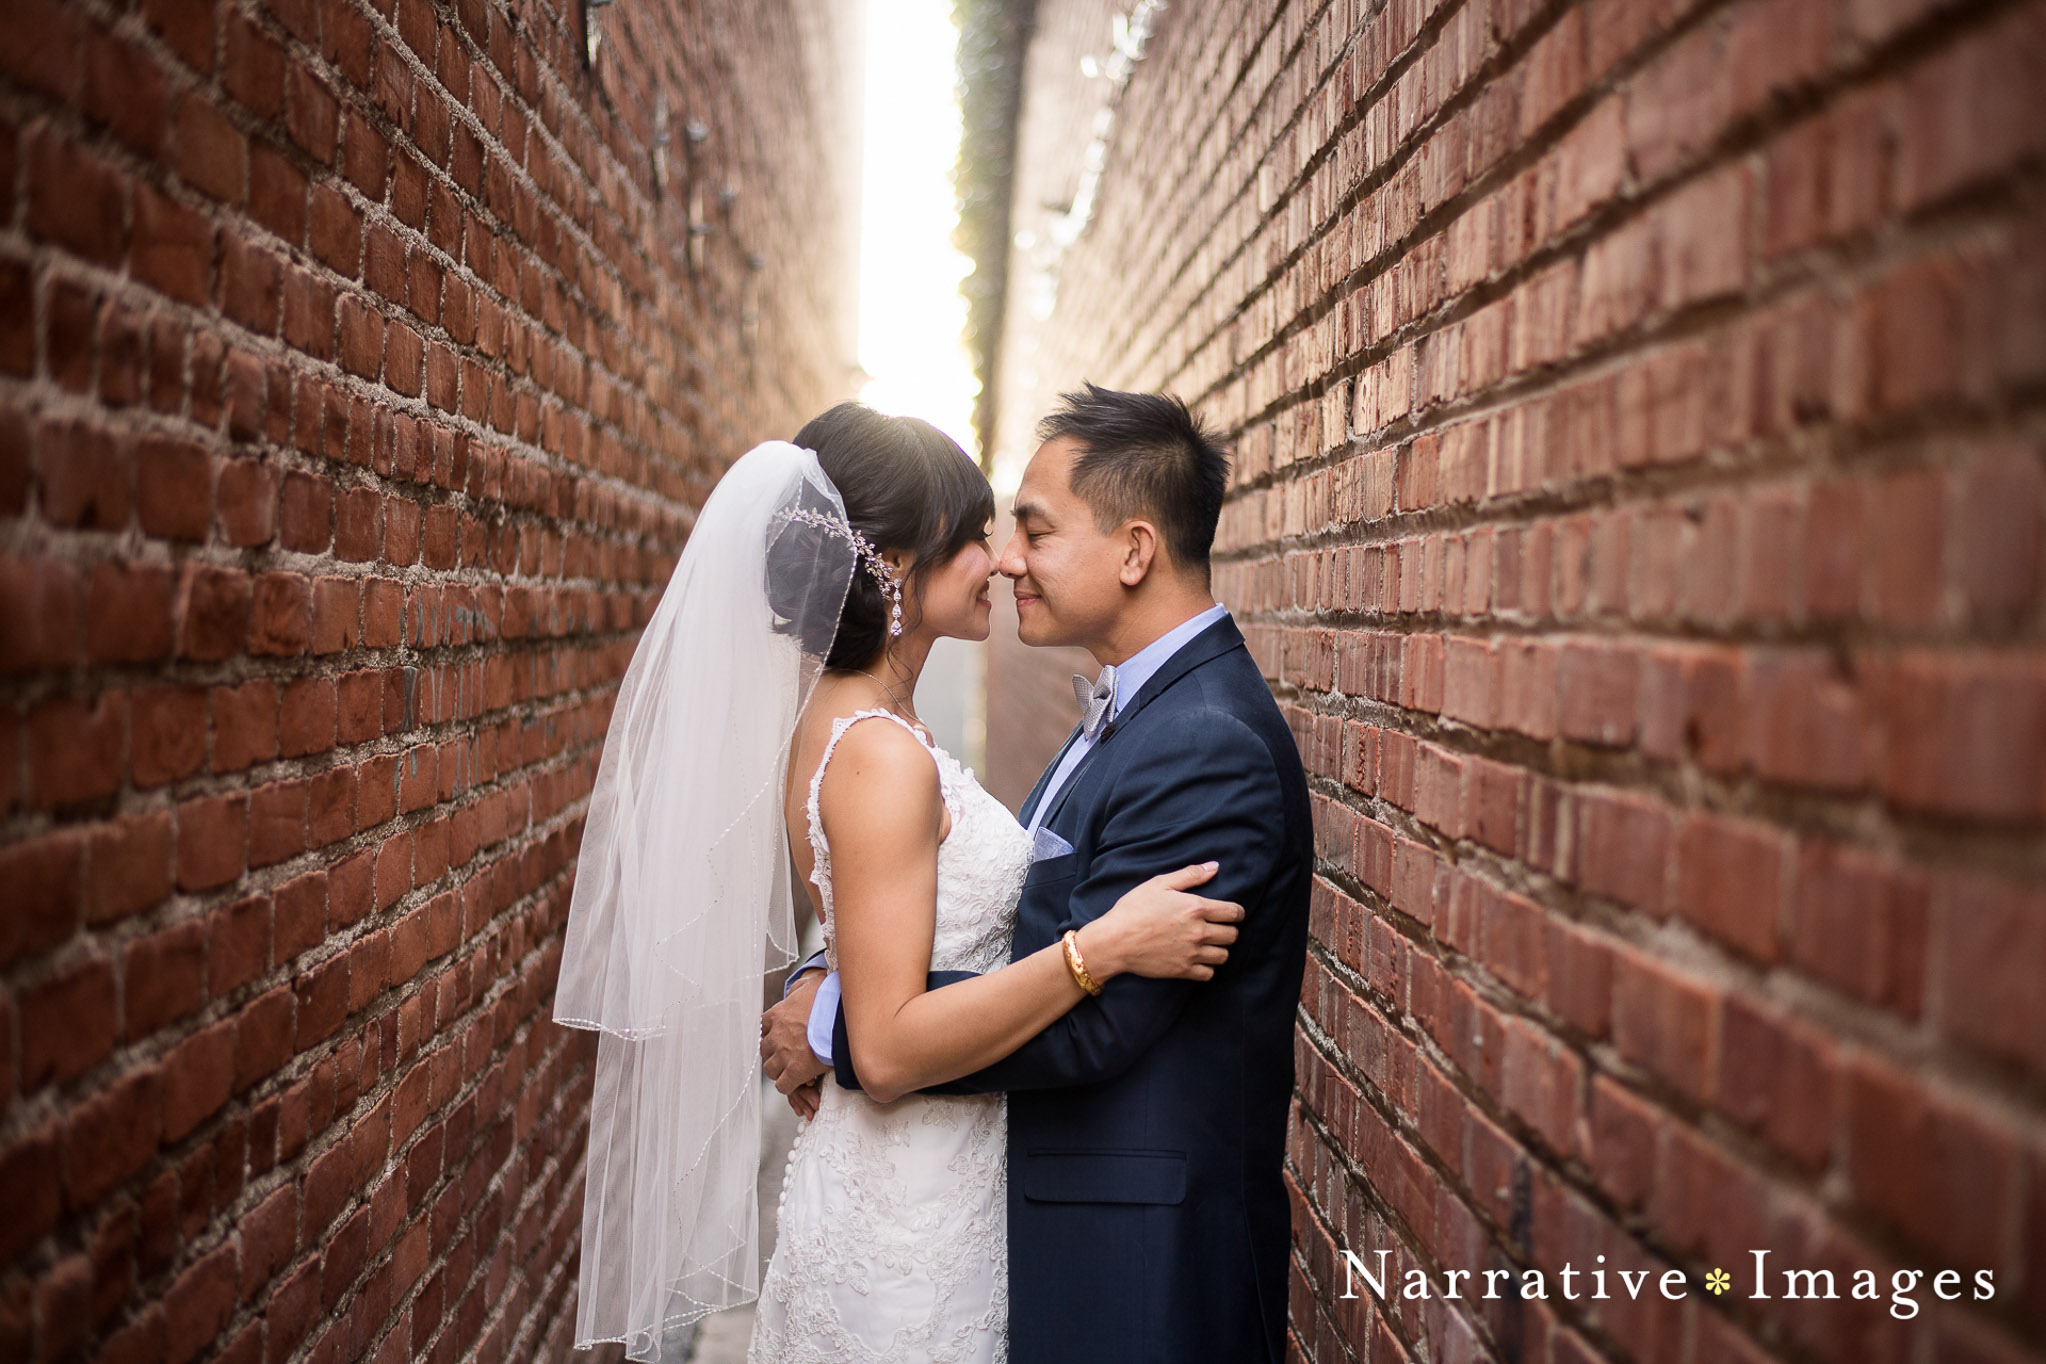 Bride and Groom in alleyway between brick walls looking into eachothers eyes